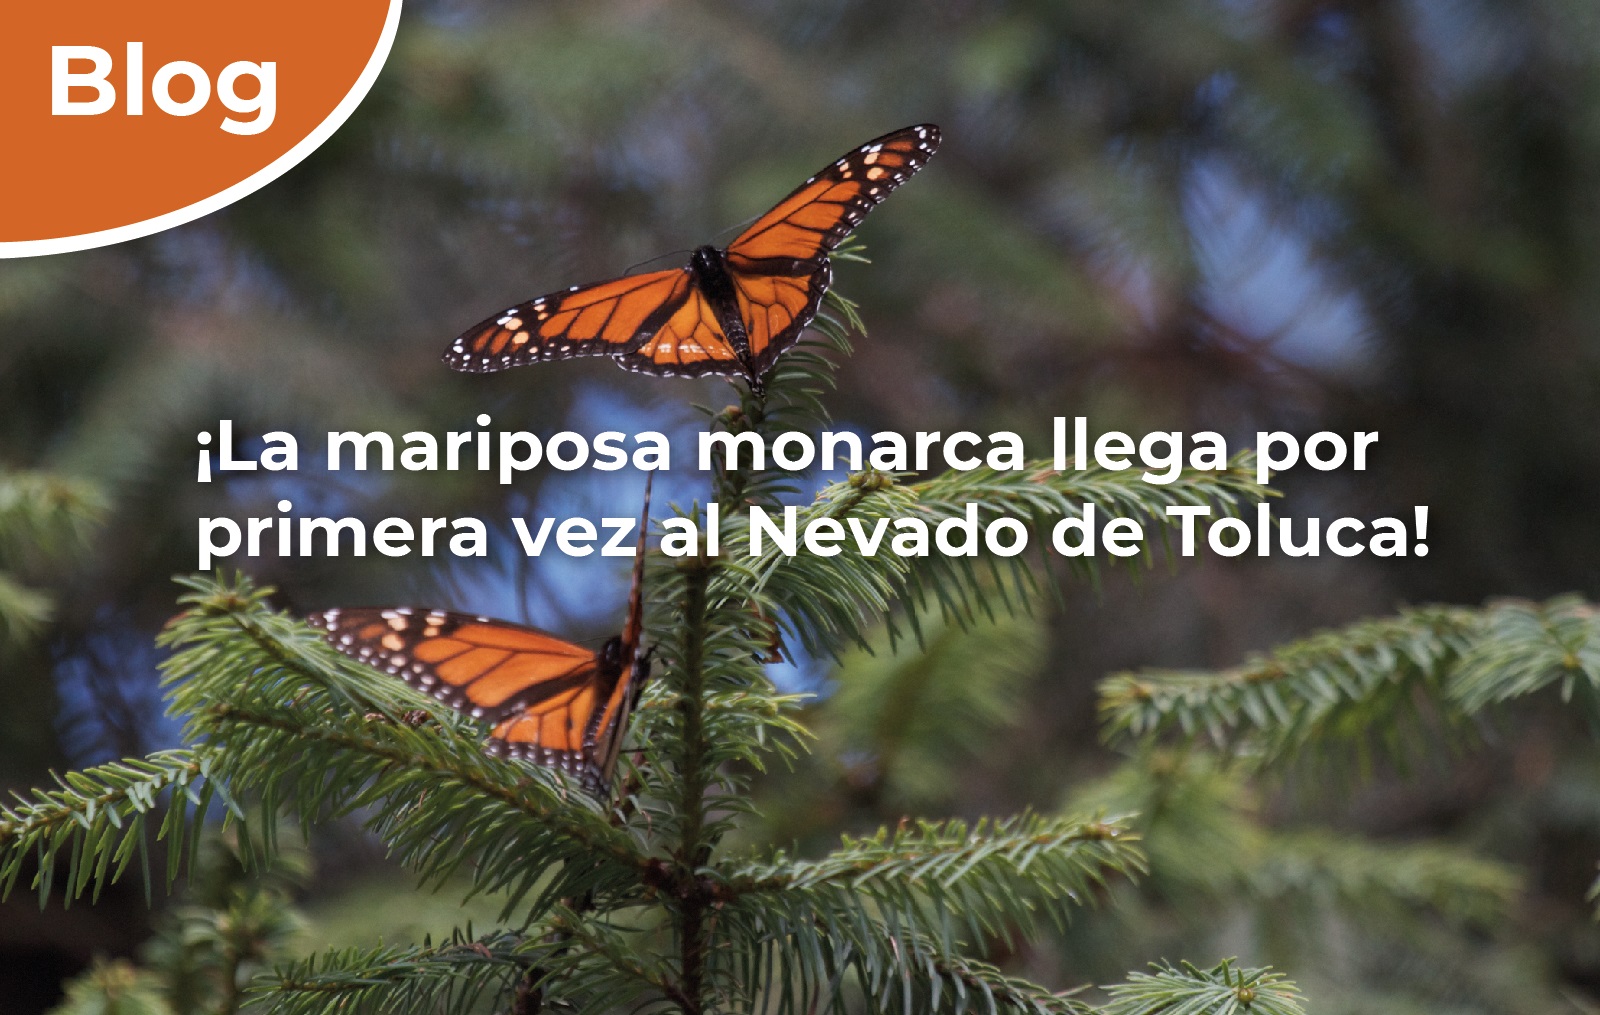 ¡La mariposa monarca llega por primera vez al Nevado de Toluca!